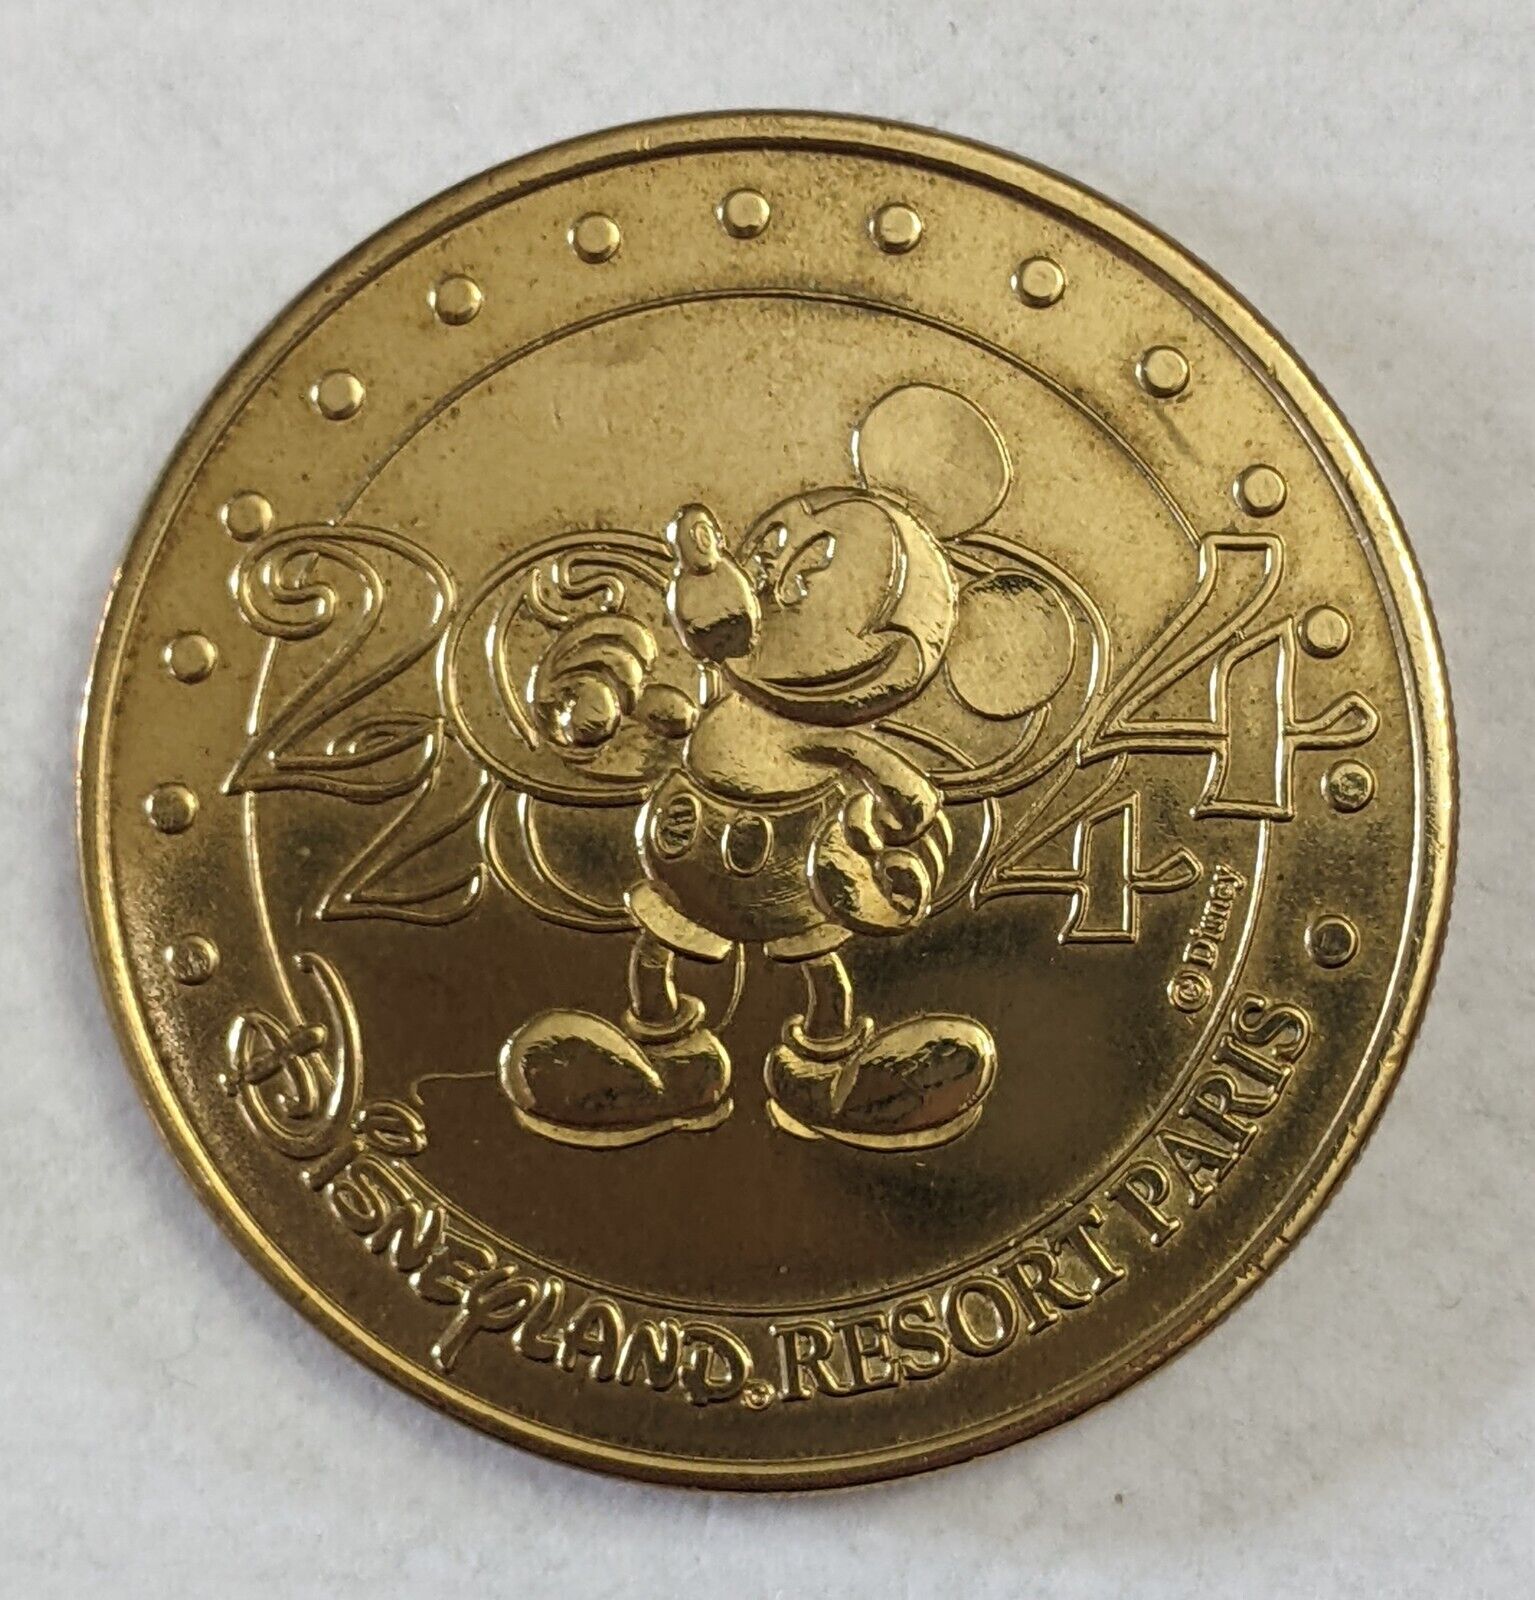 77 Monnaie de Paris Disney Disneyland Medallion: #1 2004 S Mickey--Very Rare